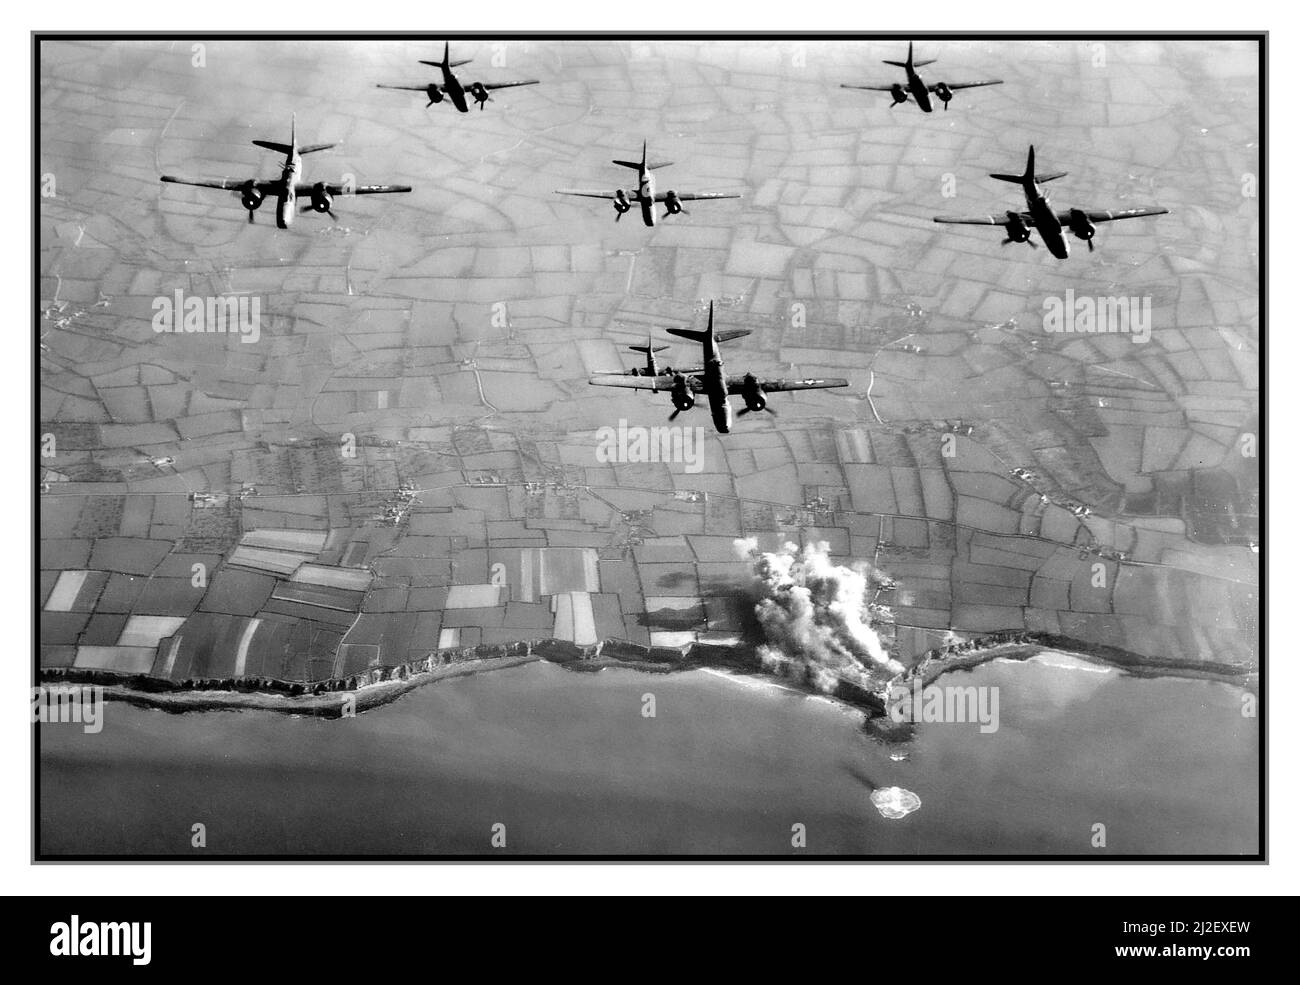 D-Day WW2 prima dell'invasione aereo Giugno 1944 Pinpoint bombardamento di Pointe du Hoc Normandia Francia settentrionale, immagine di USAF Ninth Air Force B26 bombardamenti di fortificazioni naziste prima dell'invasione D-Day. Pointe du Hoc fu la sede di una serie di bunker tedeschi e di pali di mitragliatrici. Prima dell'invasione della Normandia, l'esercito tedesco fortificò l'area con casemati di cemento e fosse per armi da fuoco. Il D-Day, il gruppo d'assalto dell'esercito degli Stati Uniti ha attaccato e catturato Pointe du Hoc dopo aver scalato le scogliere. Foto Stock